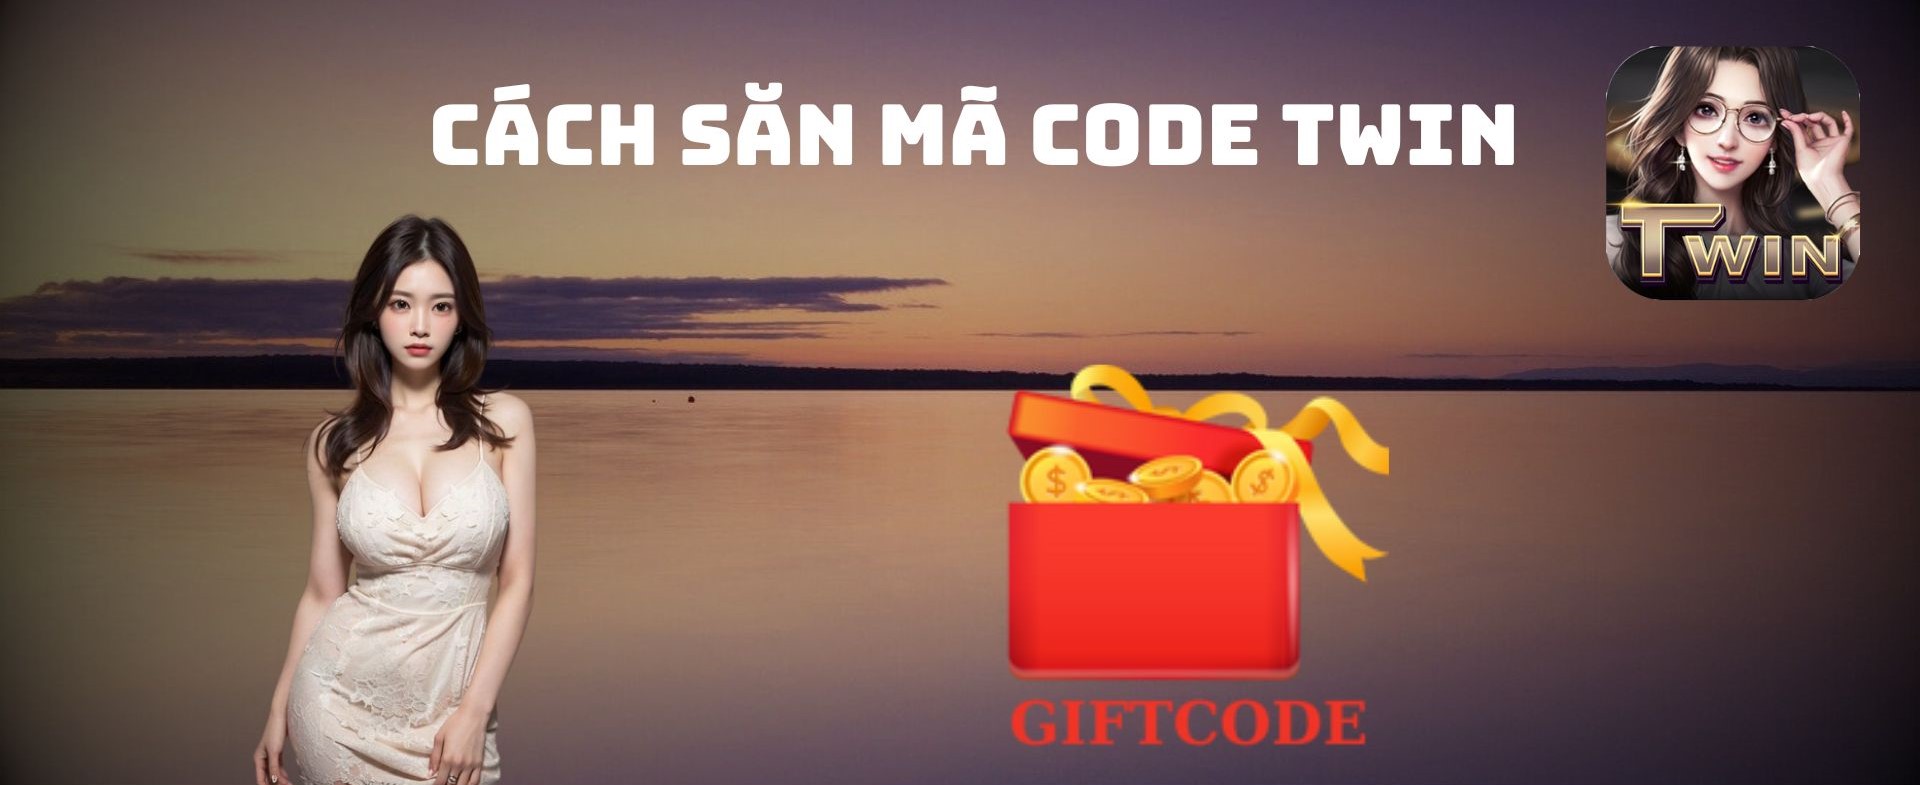 Chương trình Giftcode TWIN tổng quan